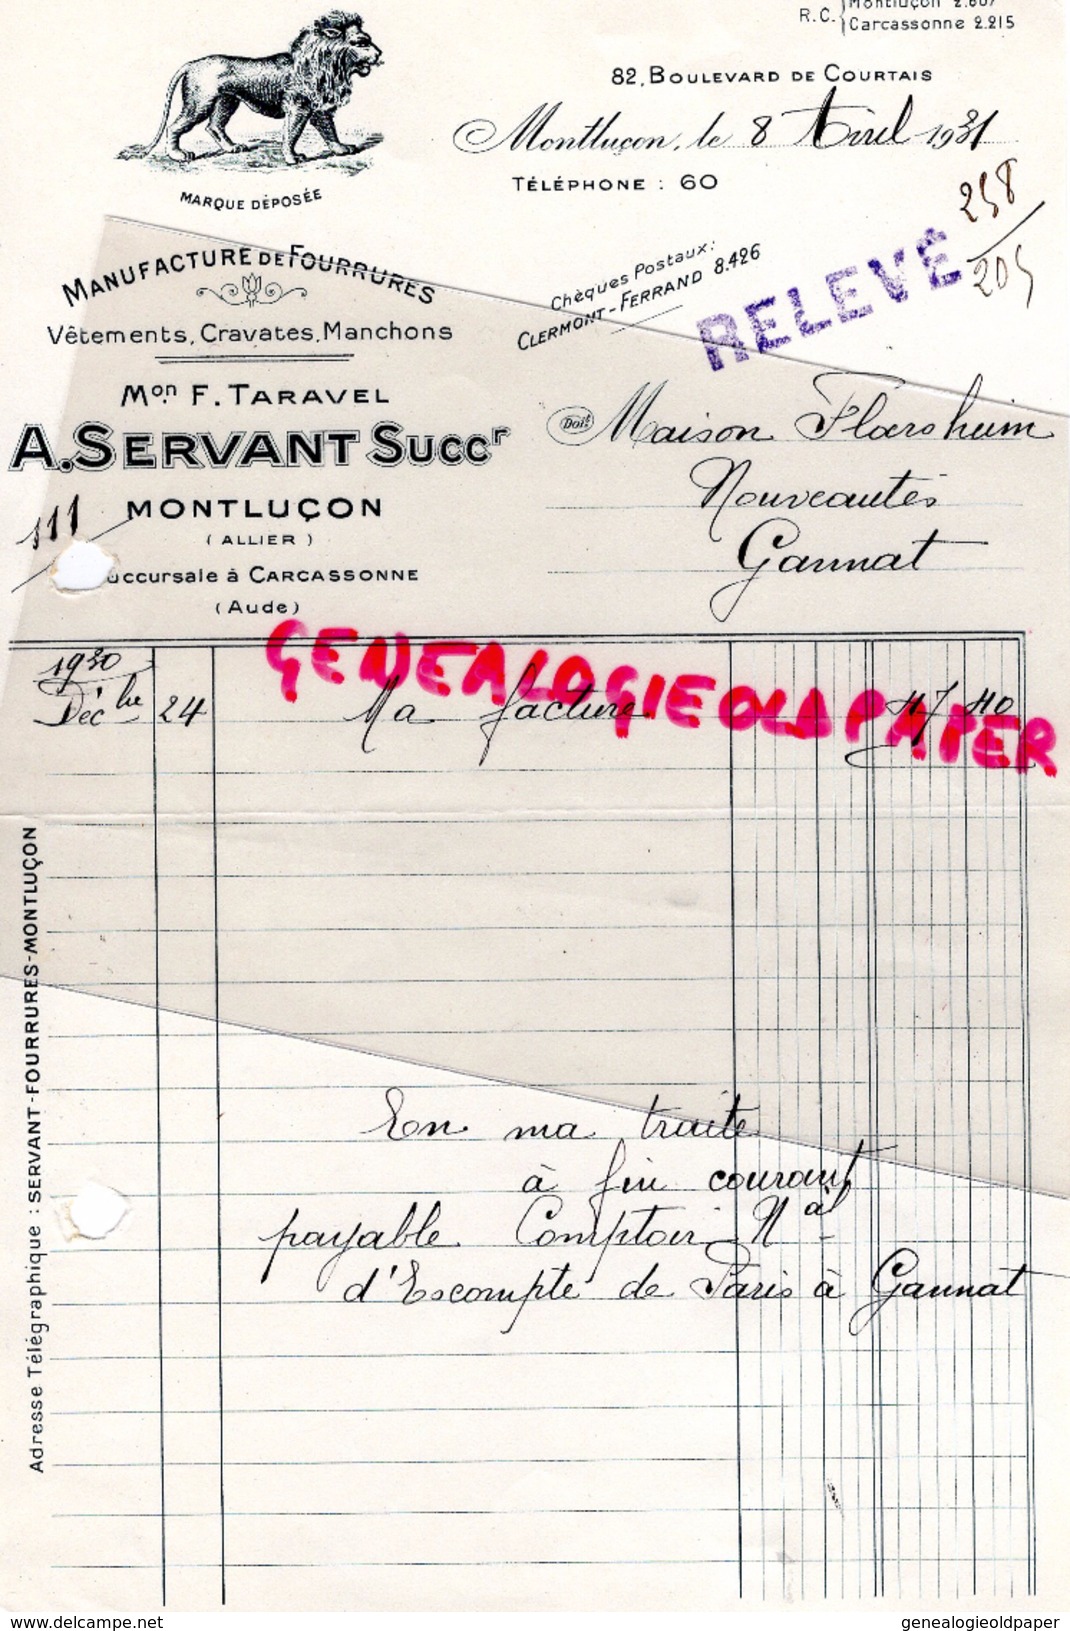 03- MONTLUCON- FACTURE A. SERVANT -F. TARAVEL- MANUFACTURE FOURRURES- VETEMENTS- 82 BD.COURTAIS- 1931 - Textile & Vestimentaire